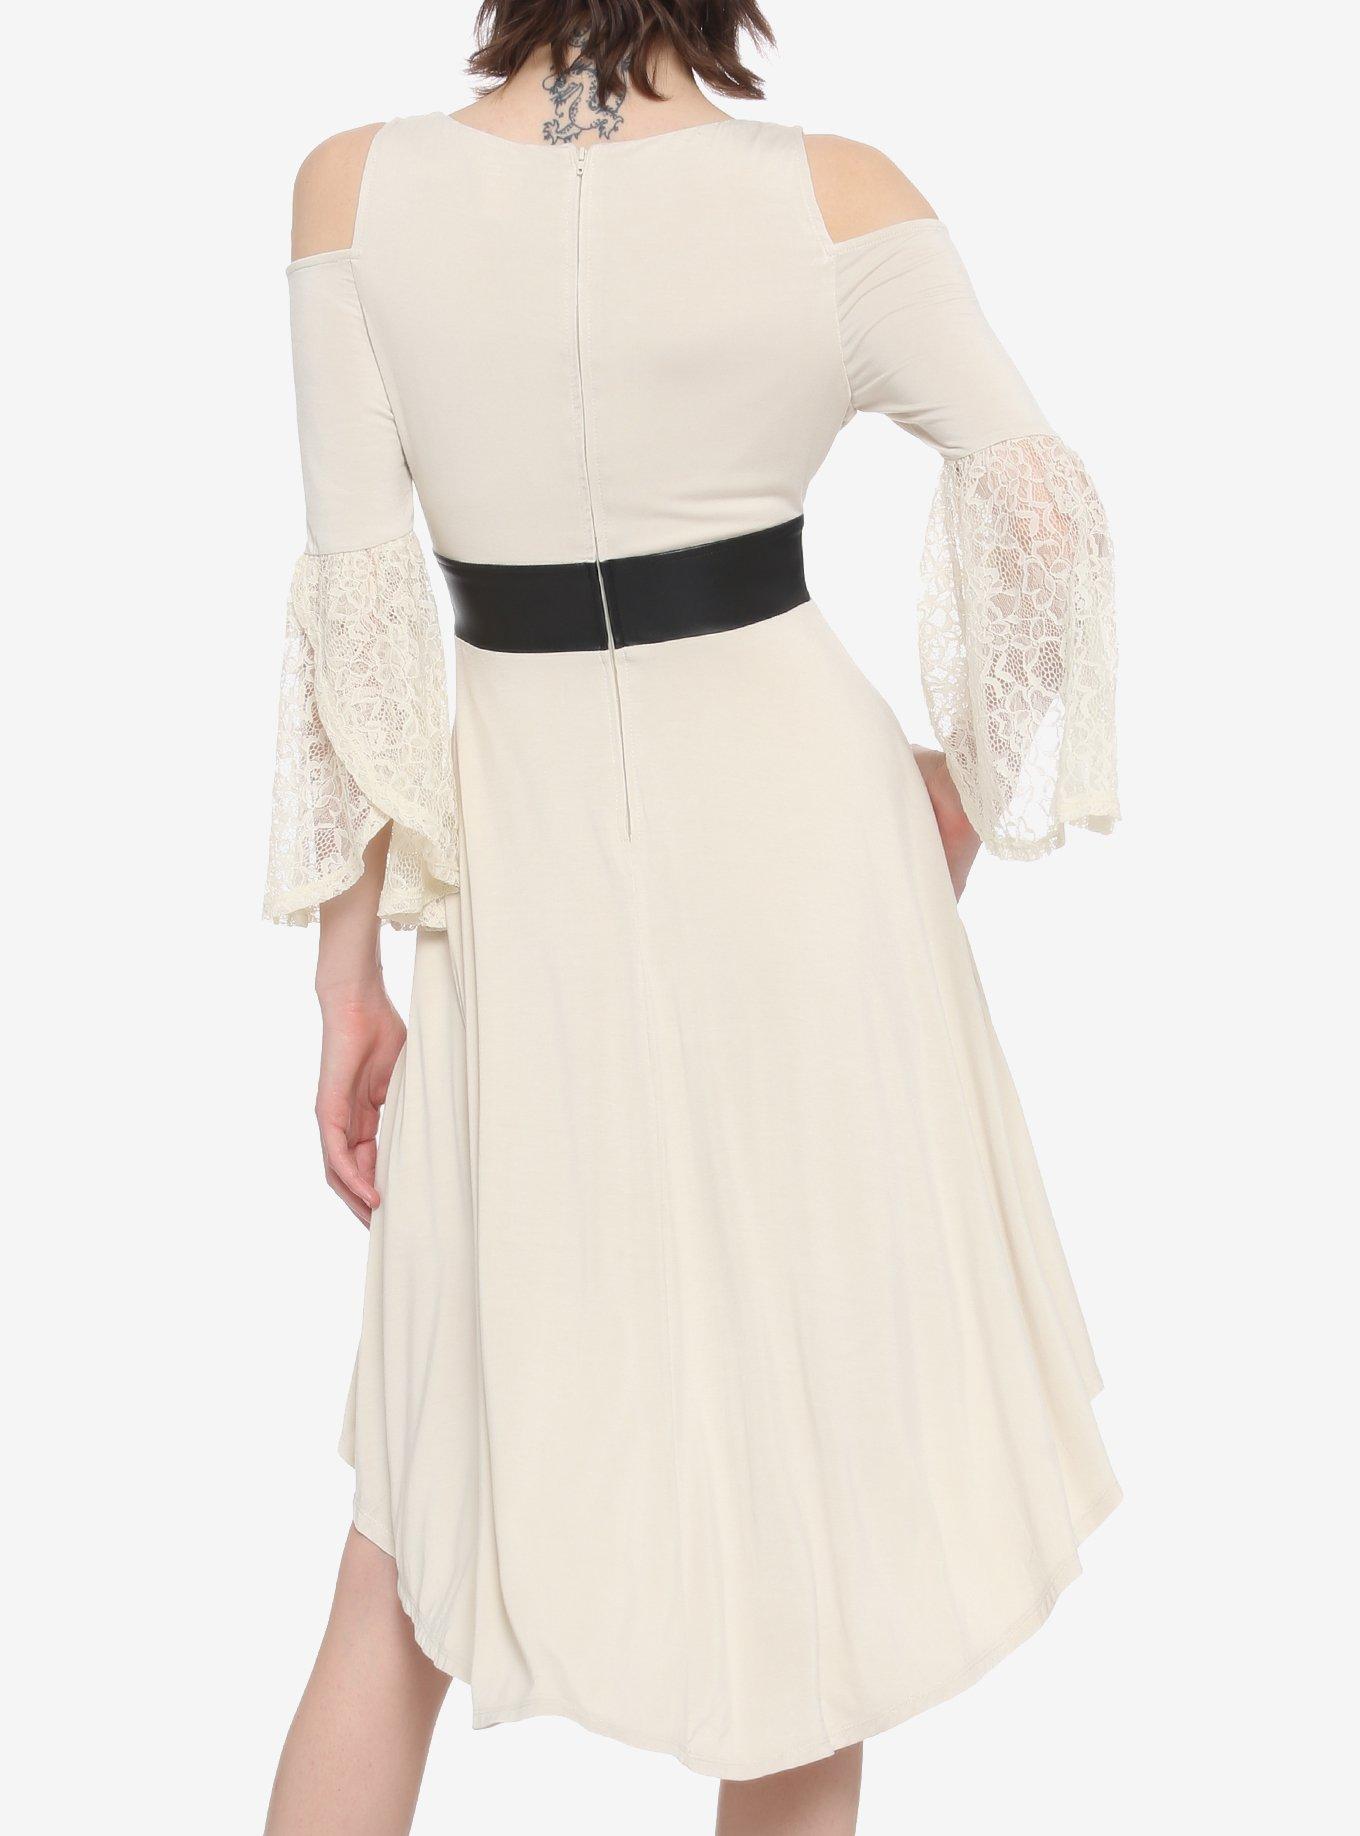 Ivory & Lace Cold Shoulder Hi-Low Dress, IVORY, alternate